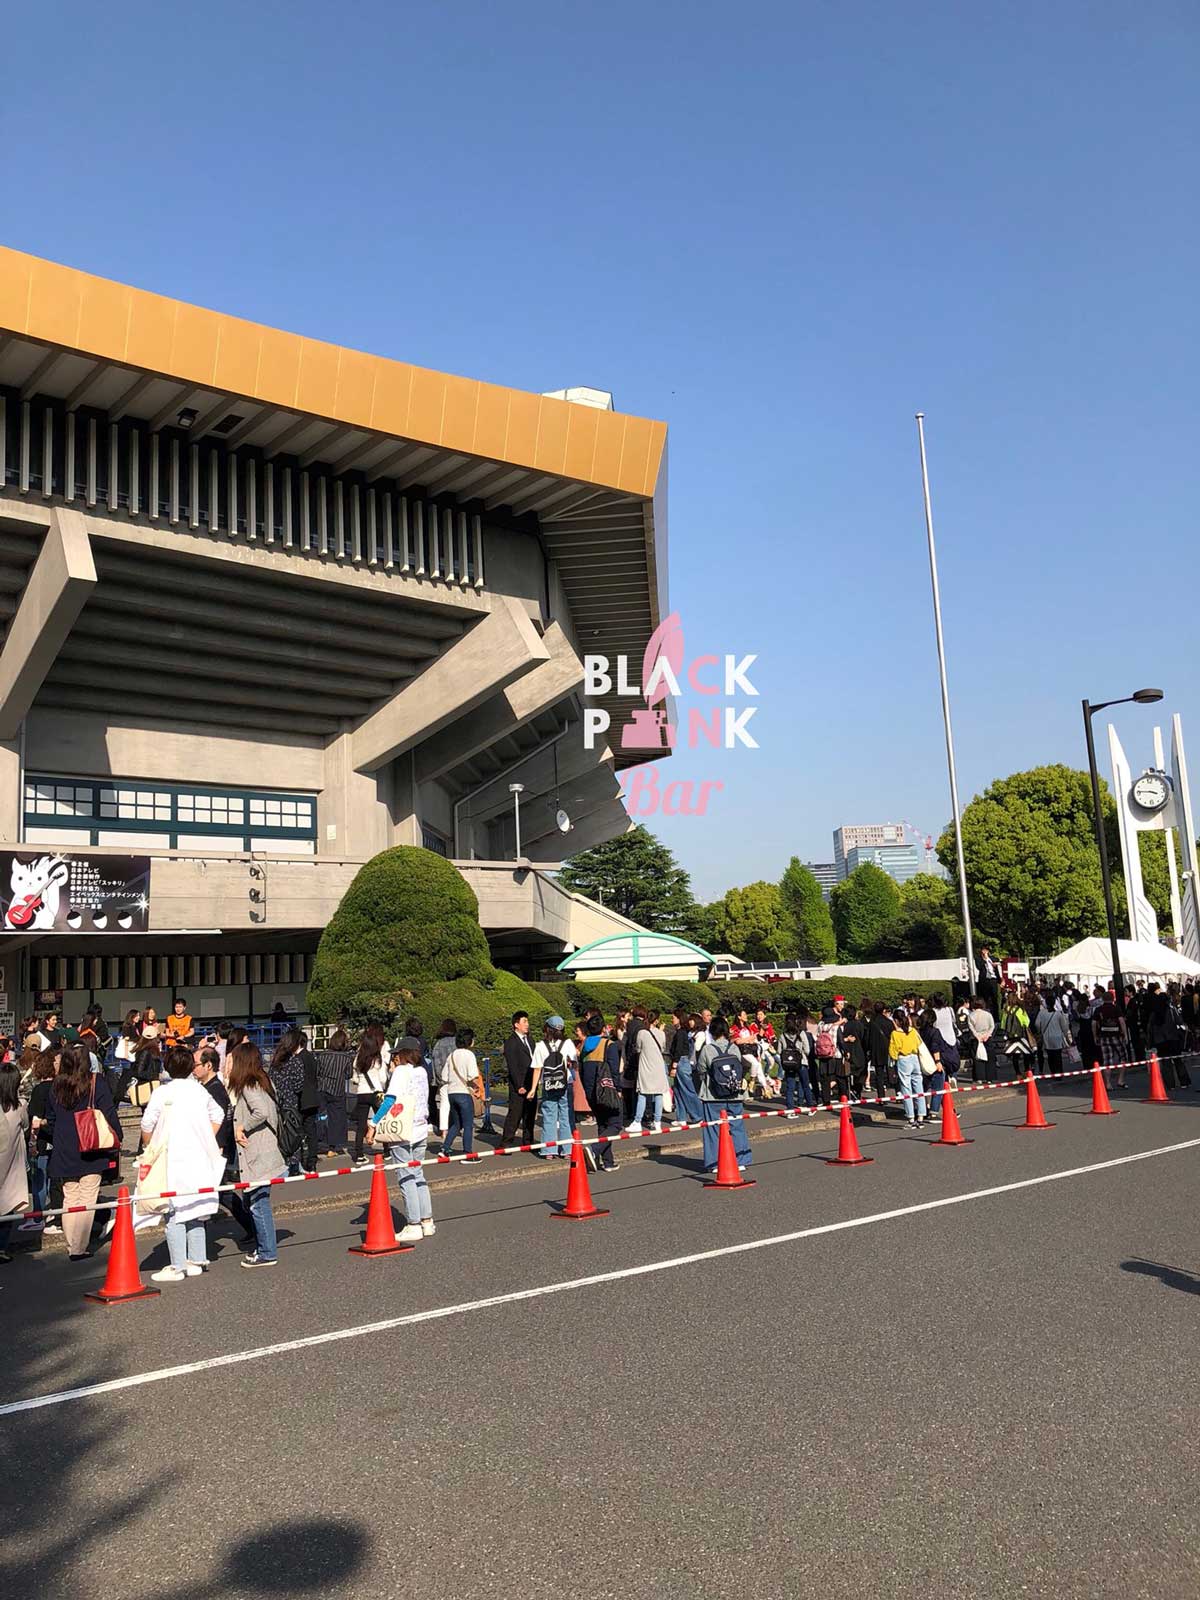 Blackpink Sukkiri Super Live Budokan 2018